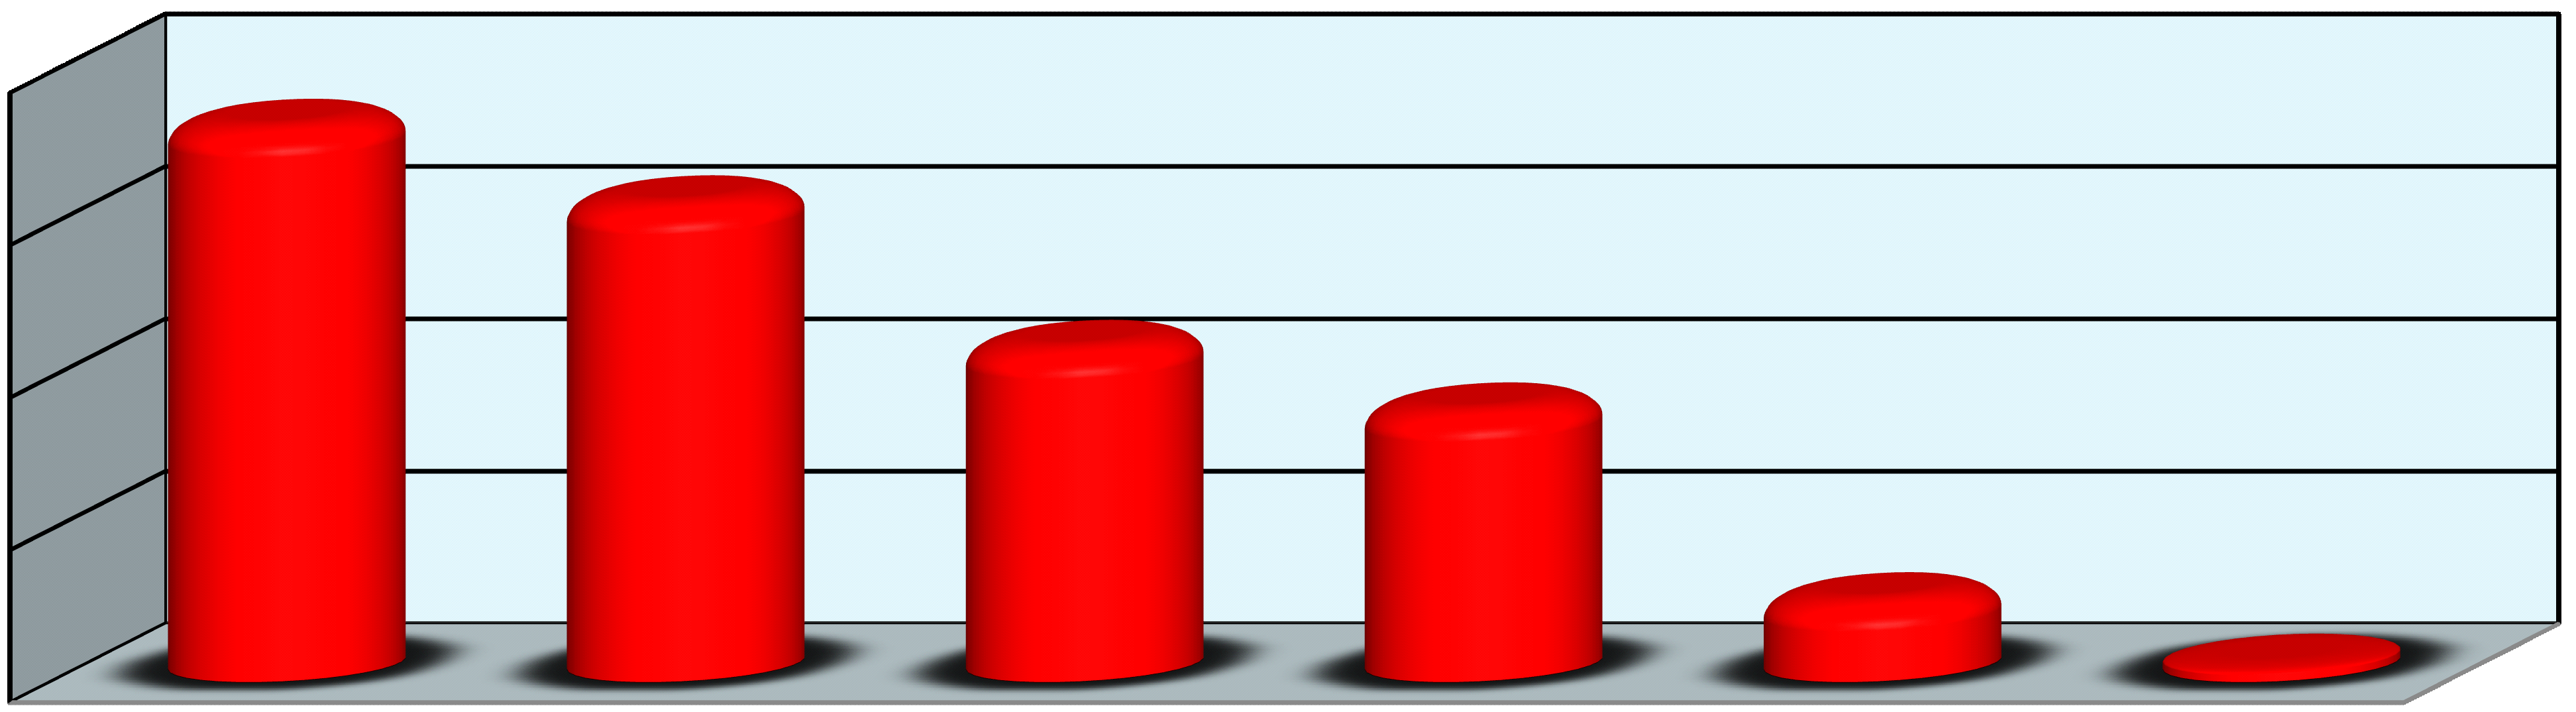 DAS Tabela 6.1 - Quantitativo dos ocupantes ¹ de DAS, segundo o nível de função - SIAPE Nível da Função 1997 1998 1999 2000 2001 2002 2003 2004 (Continua ) 2005 Fonte: SEGEP/MP. DAS-1 6.820 6.554 5.